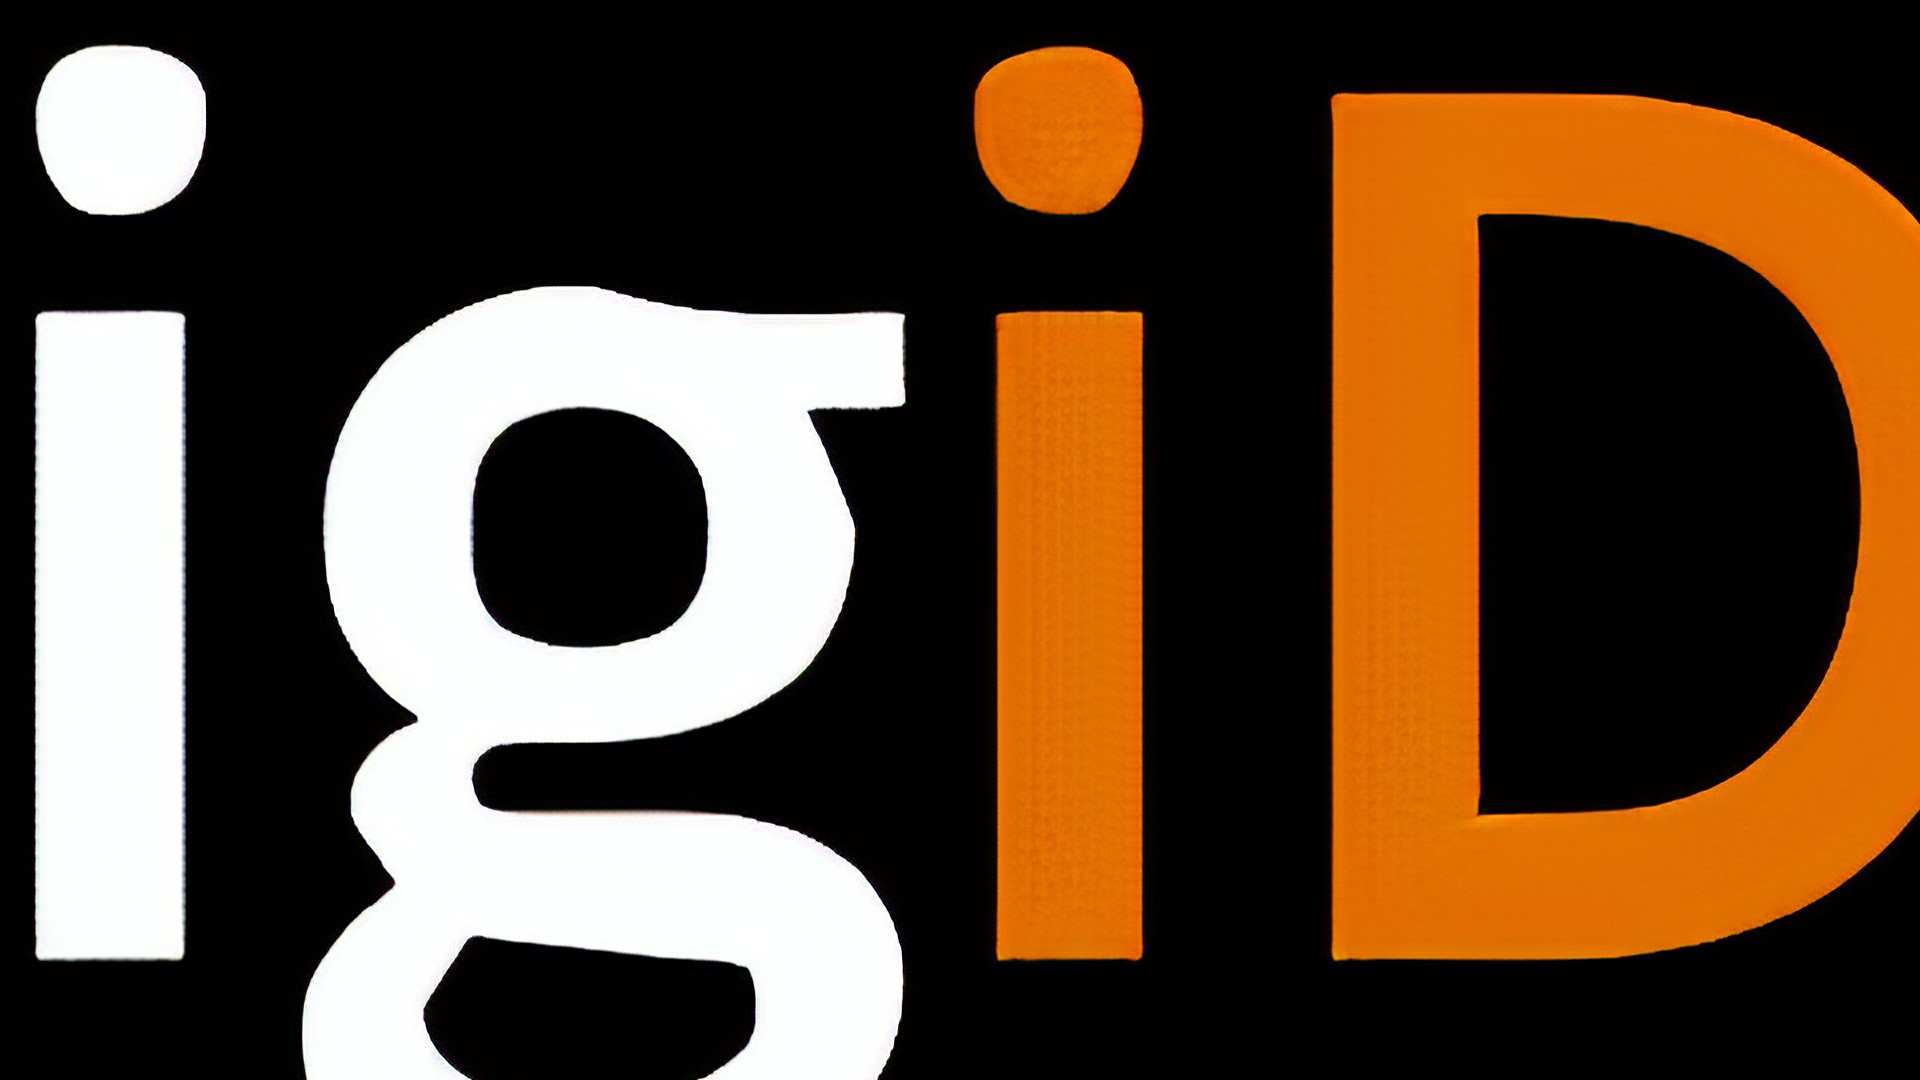 Nieuw contactkanaal voor DigiD-gebruikers: live chat